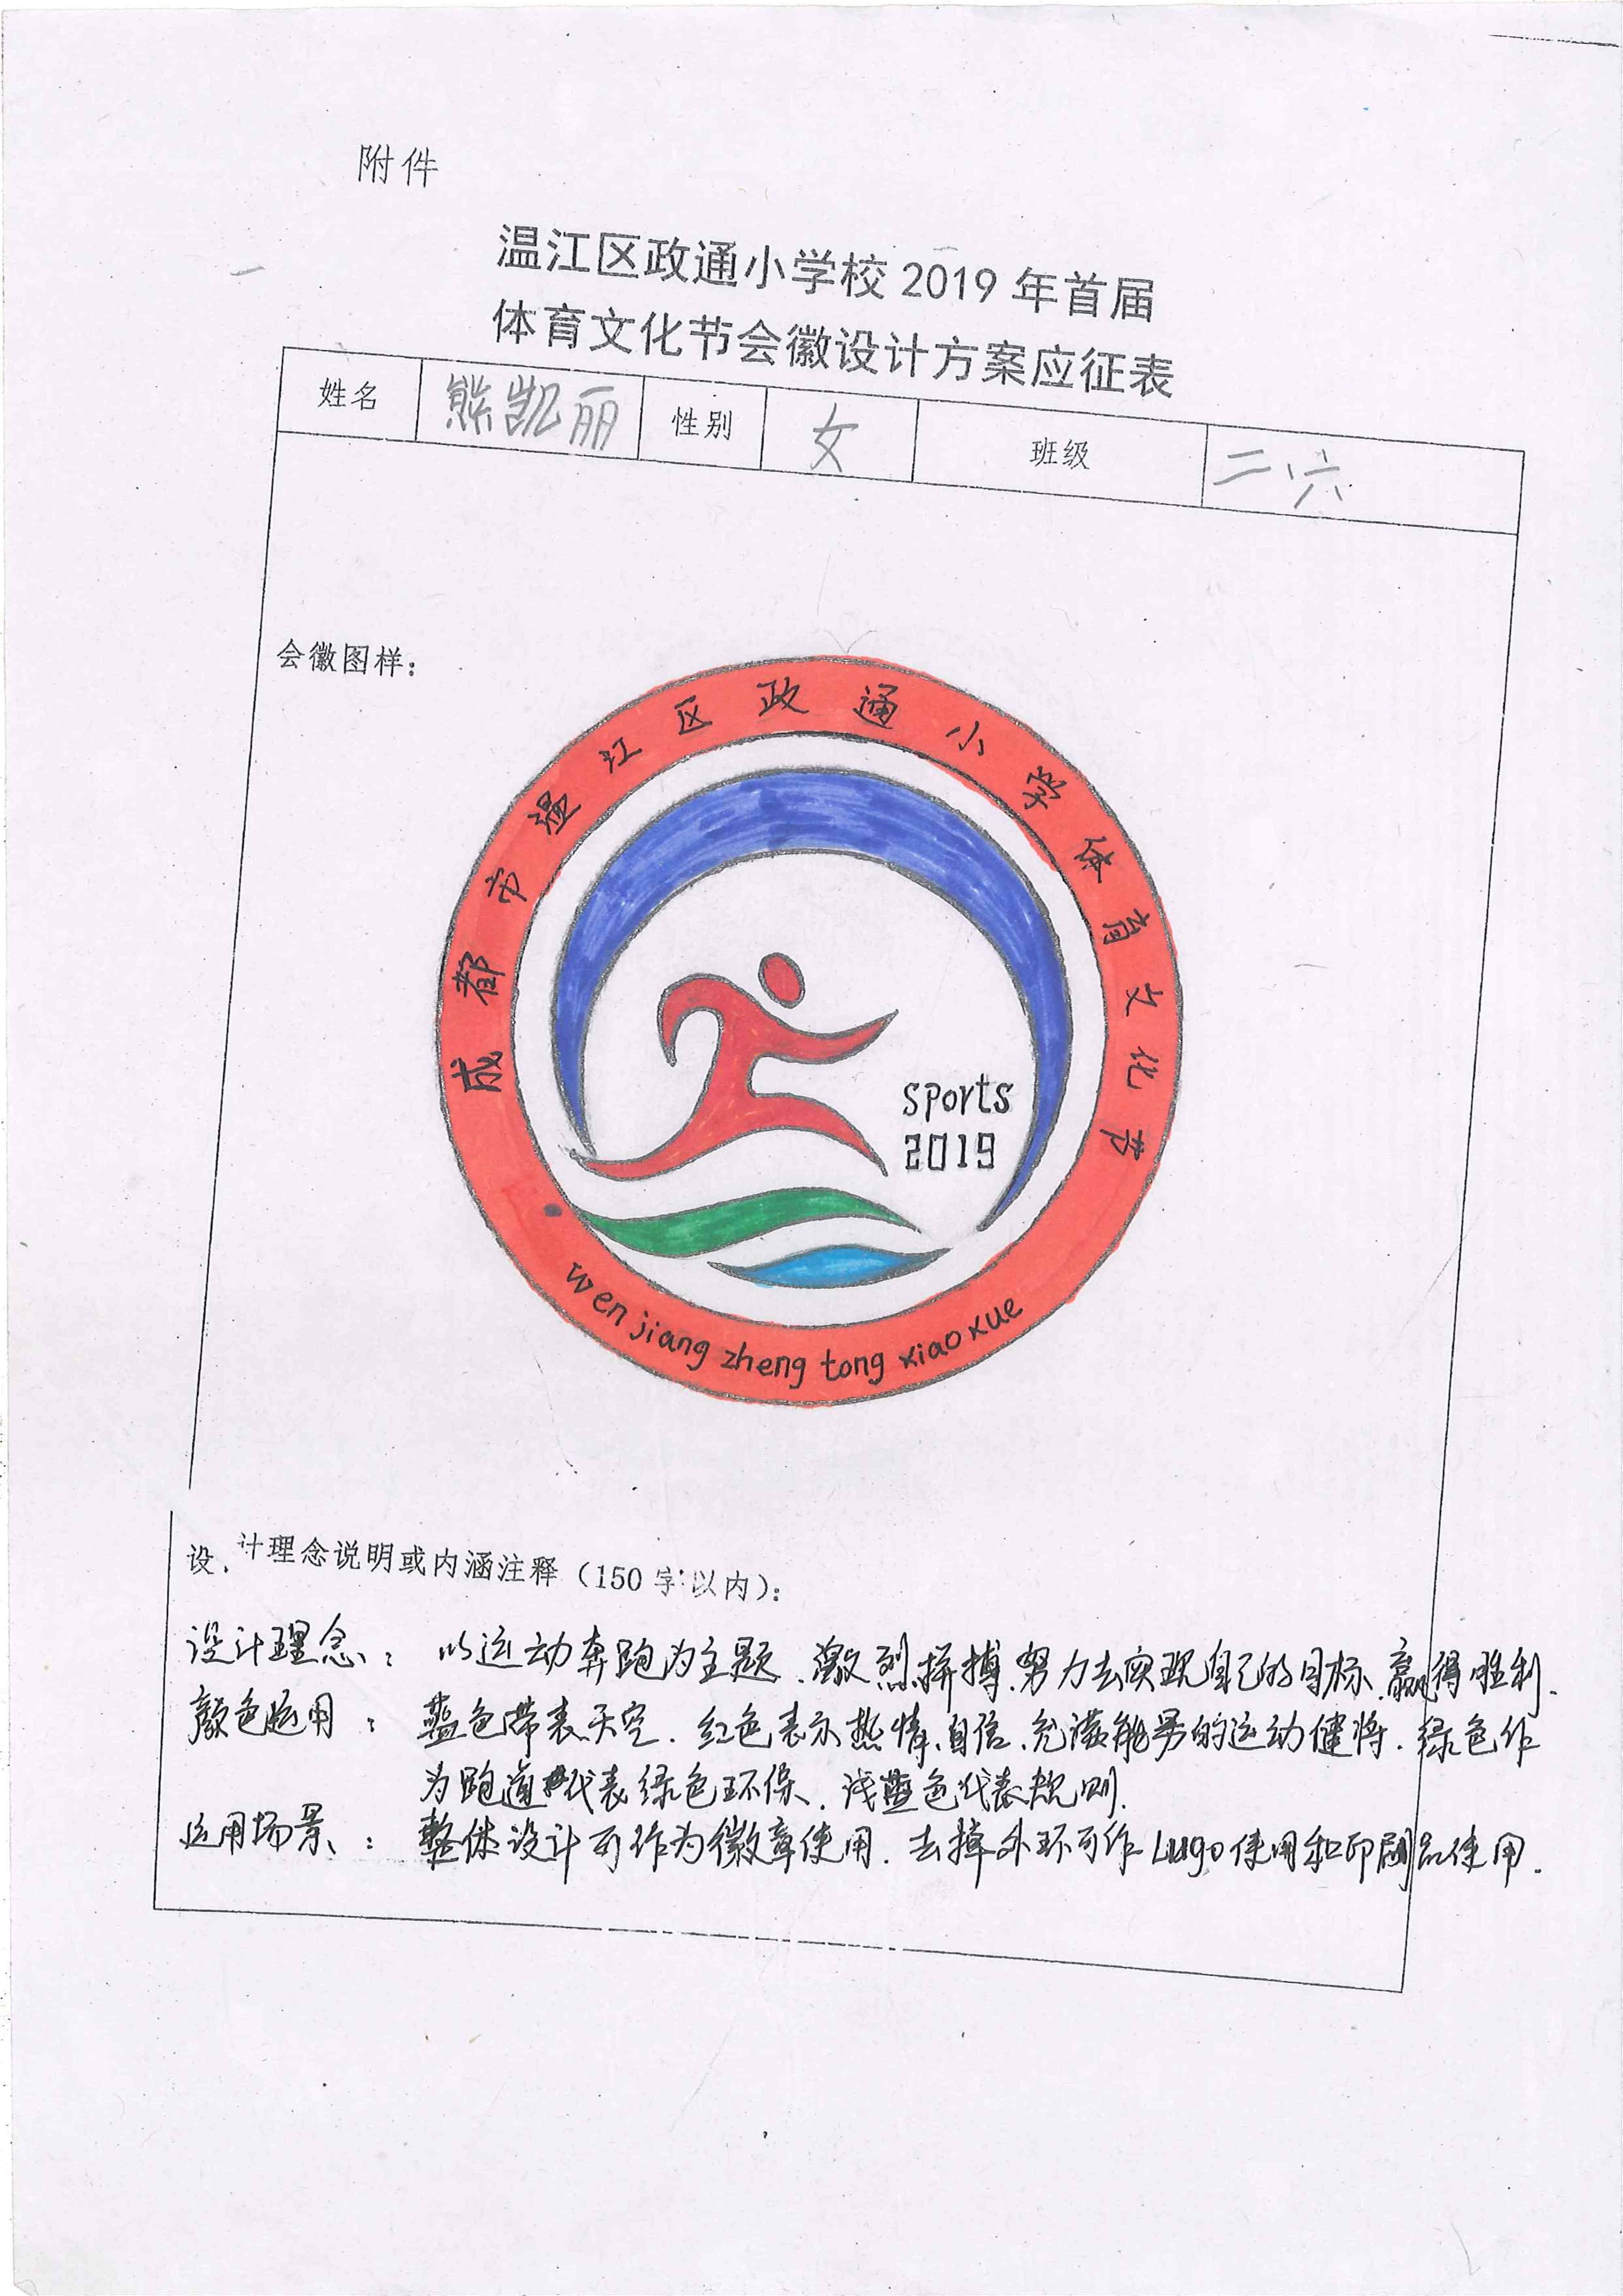 温江区政通小学校2019年首届体育文化节会徽征集活动